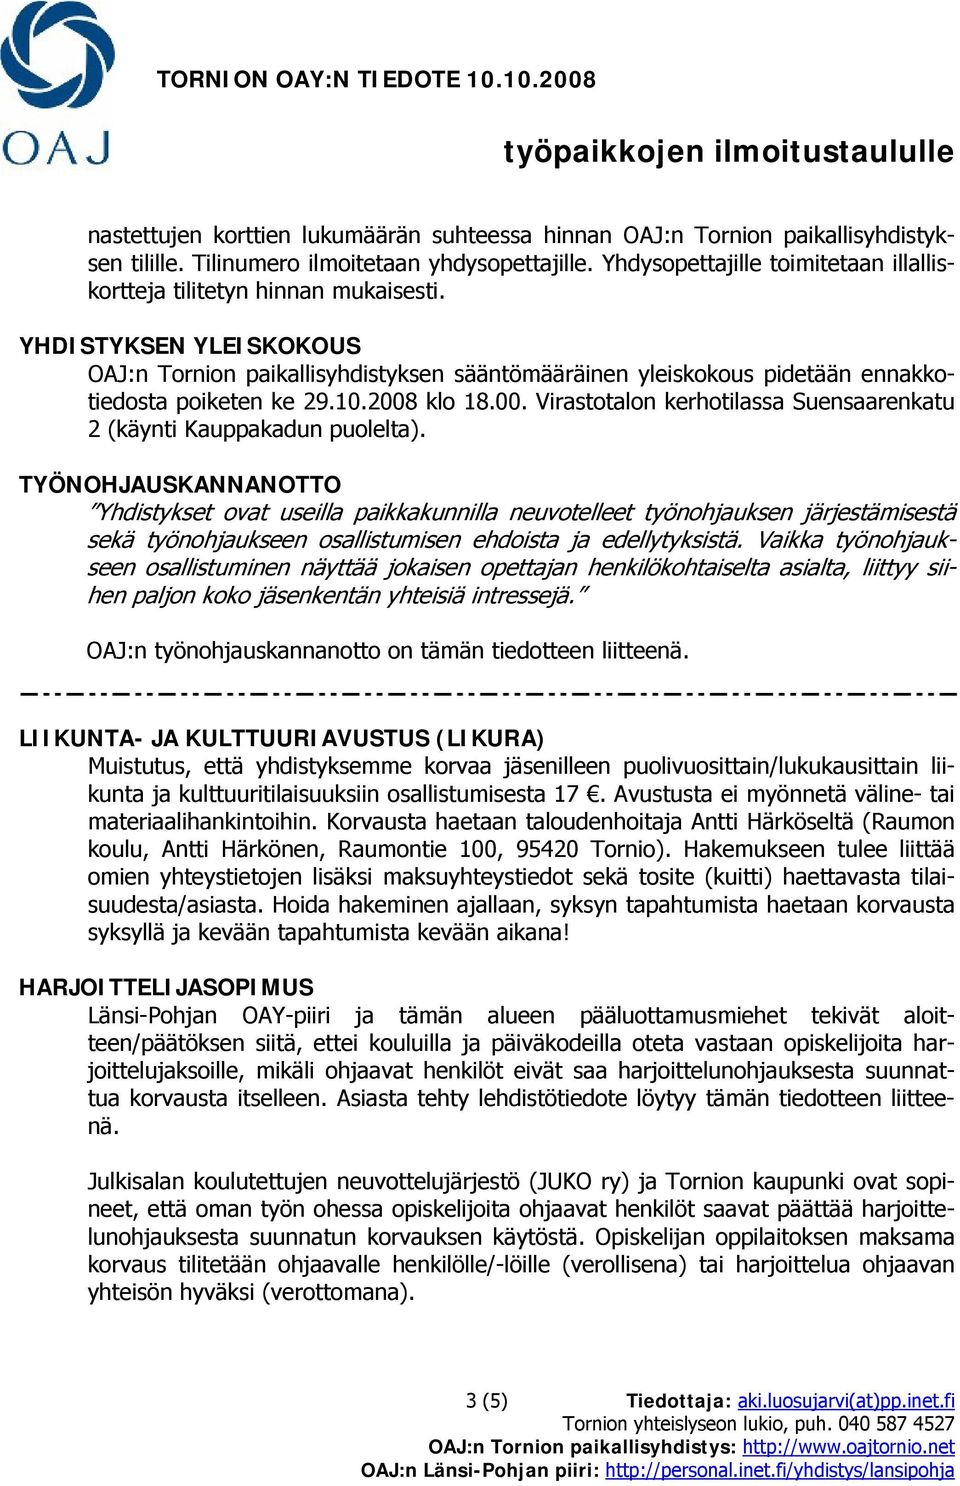 YHDISTYKSEN YLEISKOKOUS OAJ:n Tornion paikallisyhdistyksen sääntömääräinen yleiskokous pidetään ennakkotiedosta poiketen ke 29.10.2008